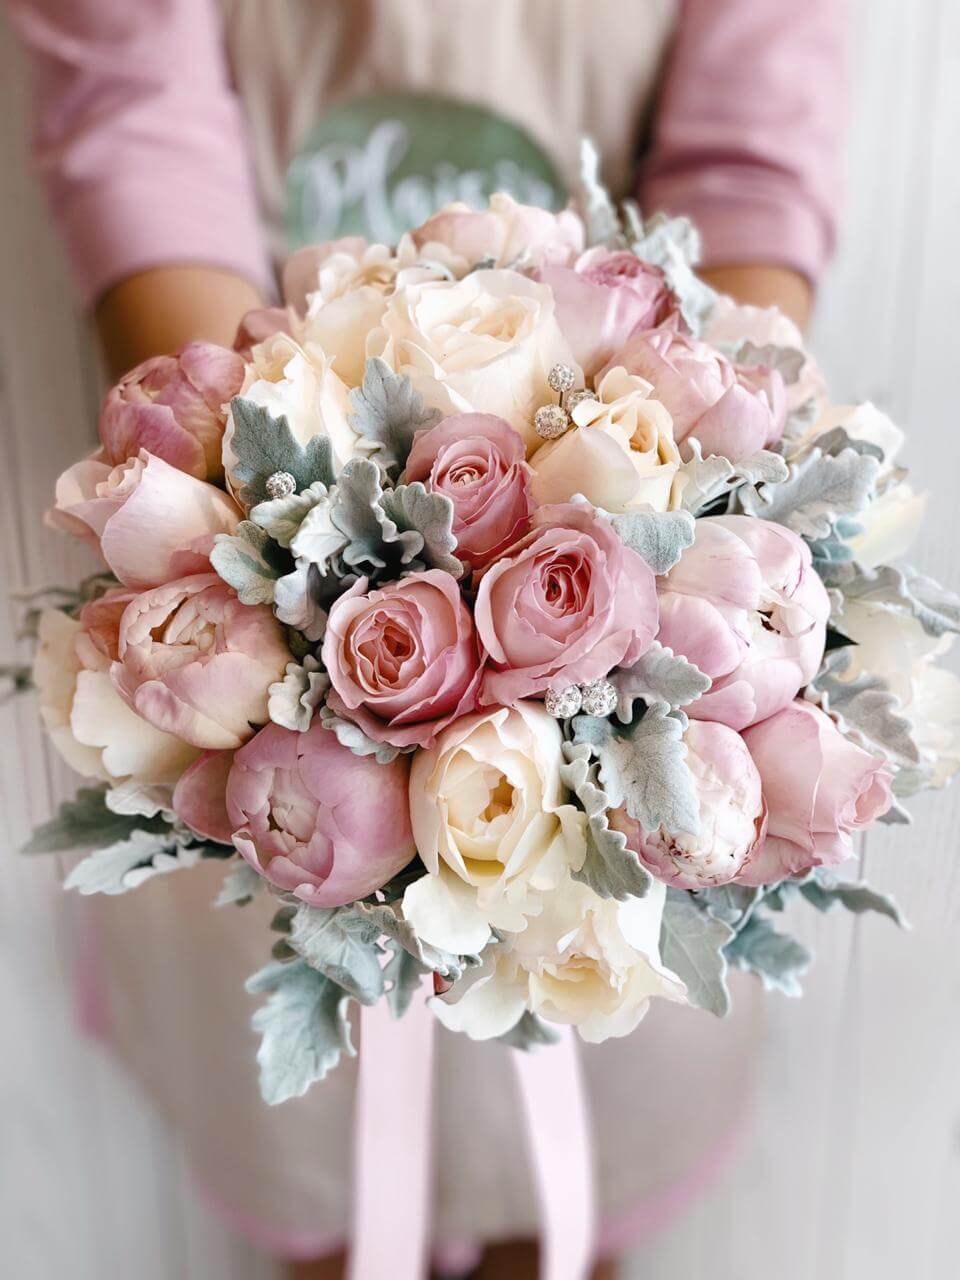 Buy Best Bridal Bouquets in Dubai | Plaisir Cadeaxu